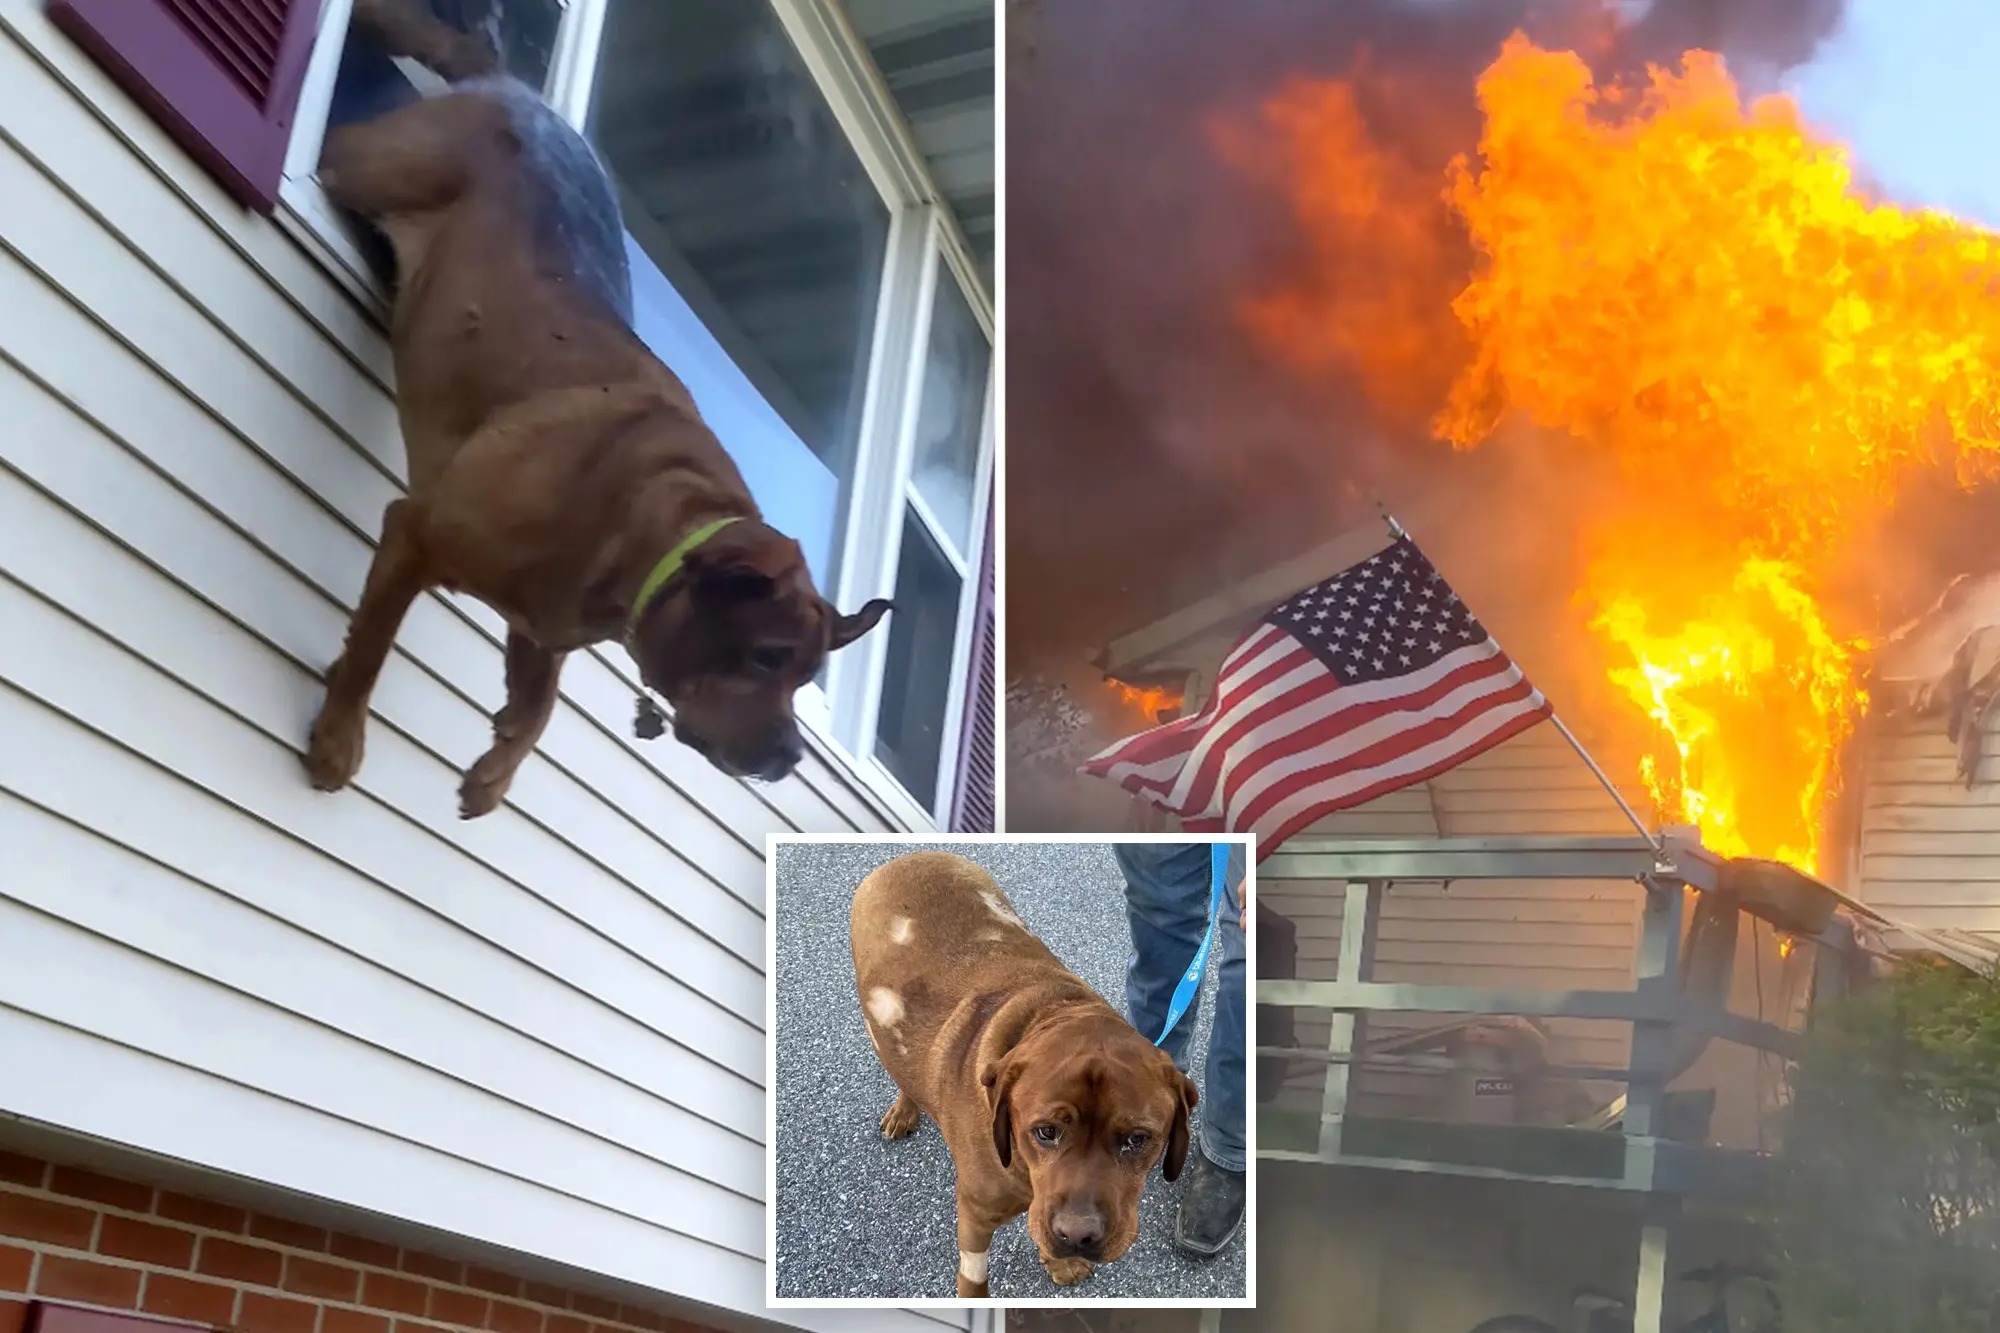 ¡Vamos, Charlie! Dramático VIDEO muestra como un perro salta por la ventana escapando de incendio en EEUU